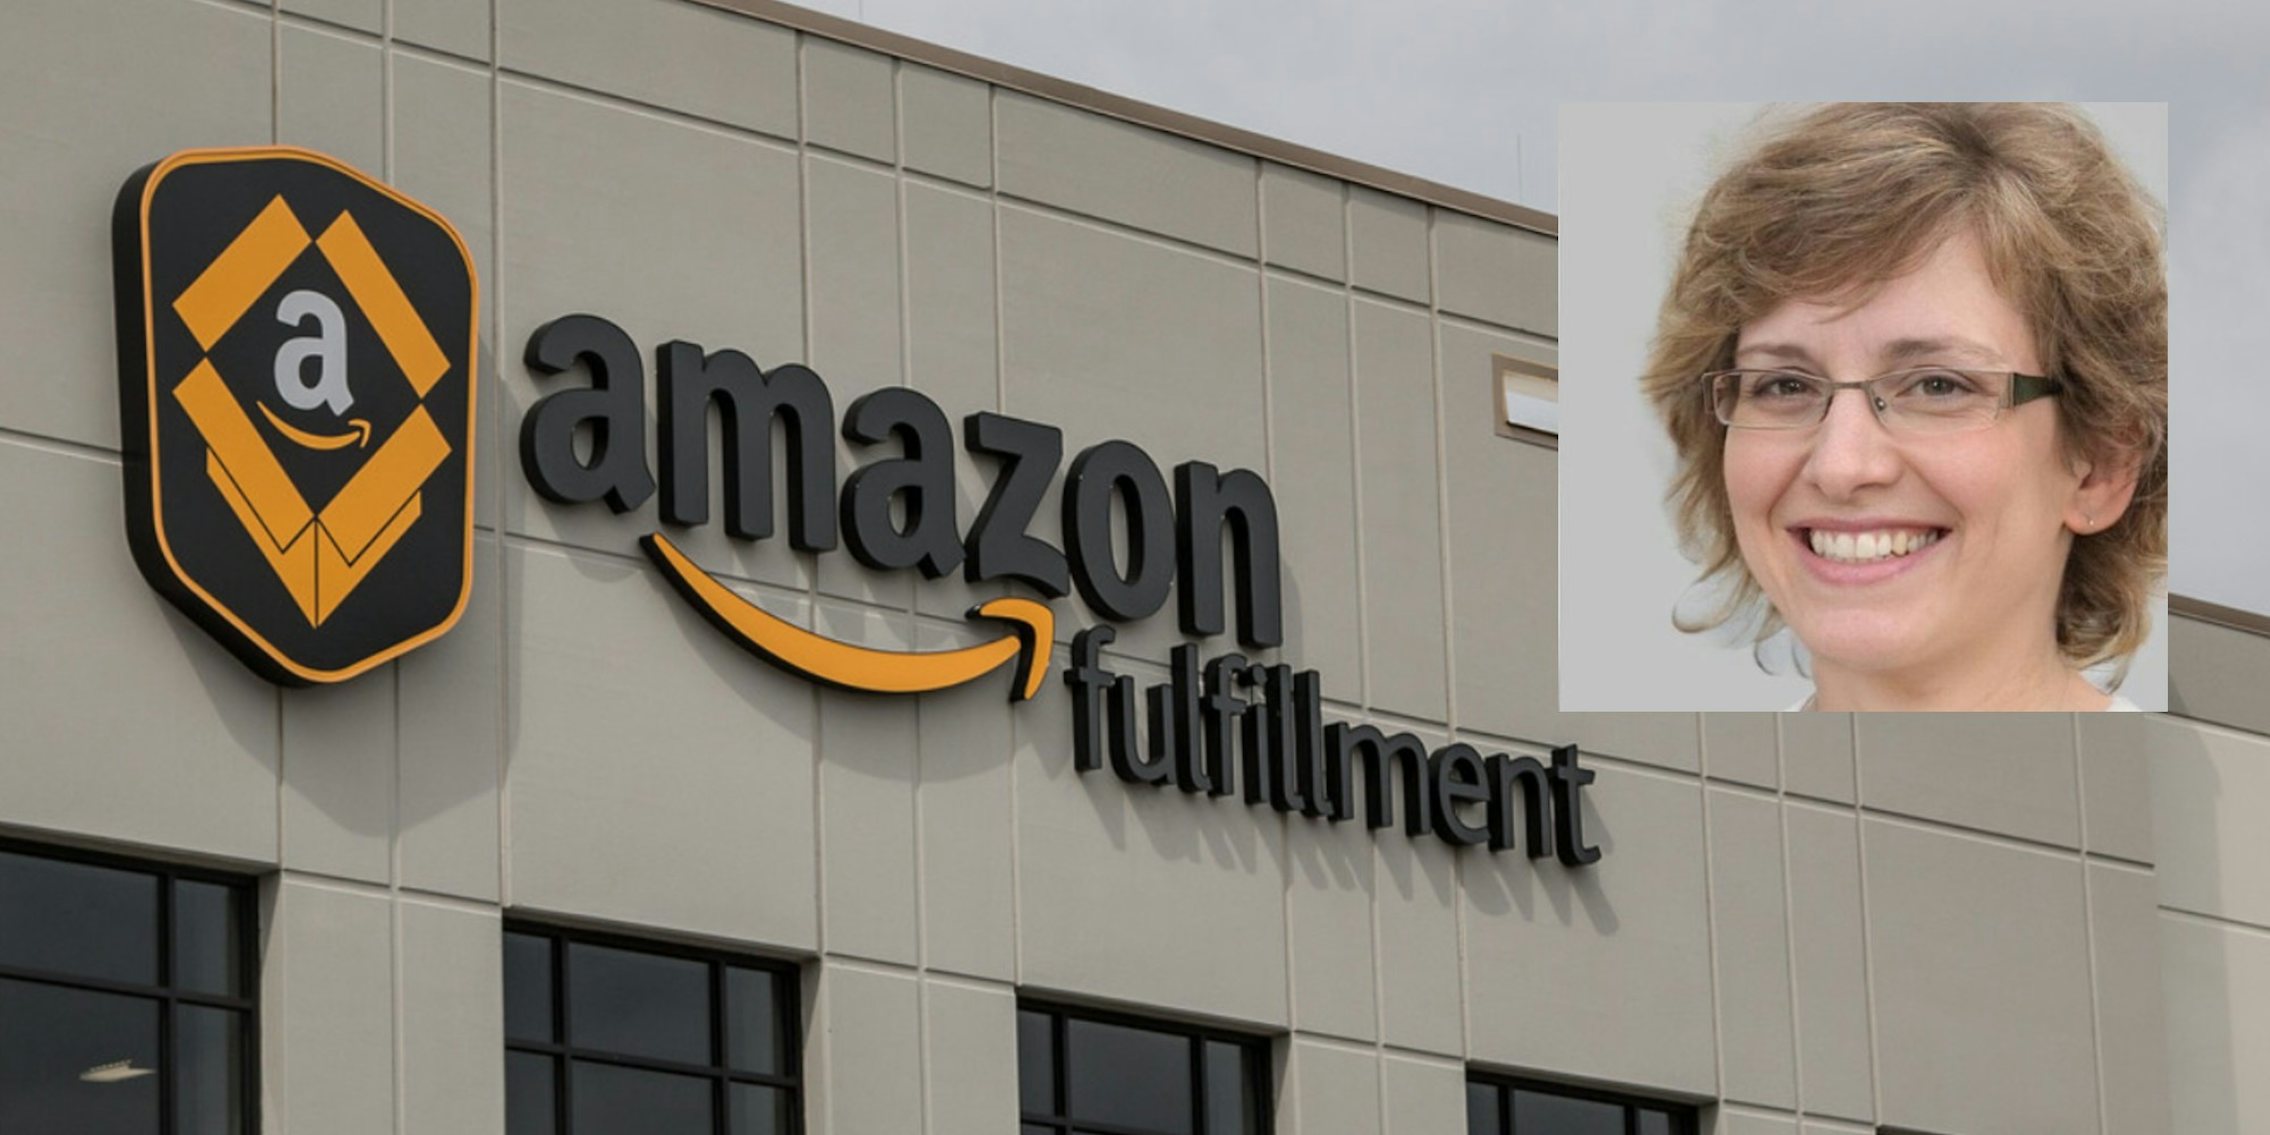 A potentially fake Amazon employee over a fulfillment center